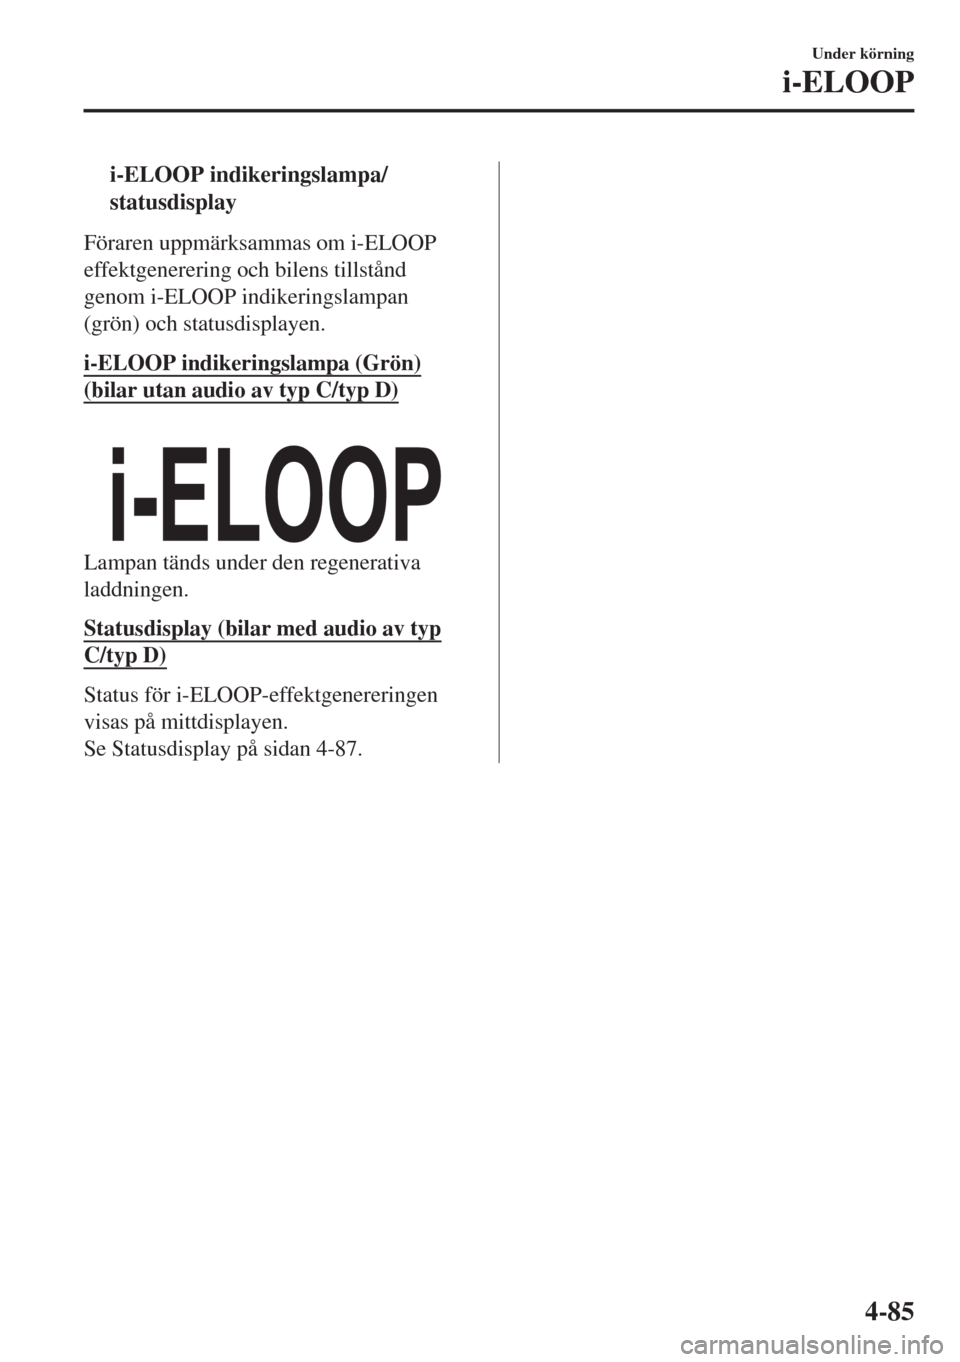 MAZDA MODEL CX-3 2015  Ägarmanual (in Swedish) ti-ELOOP indikeringslampa/
statusdisplay
Föraren uppmärksammas om i-ELOOP
effektgenerering och bilens tillstånd
genom i-ELOOP indikeringslampan
(grön) och statusdisplayen.
i-ELOOP indikeringslampa